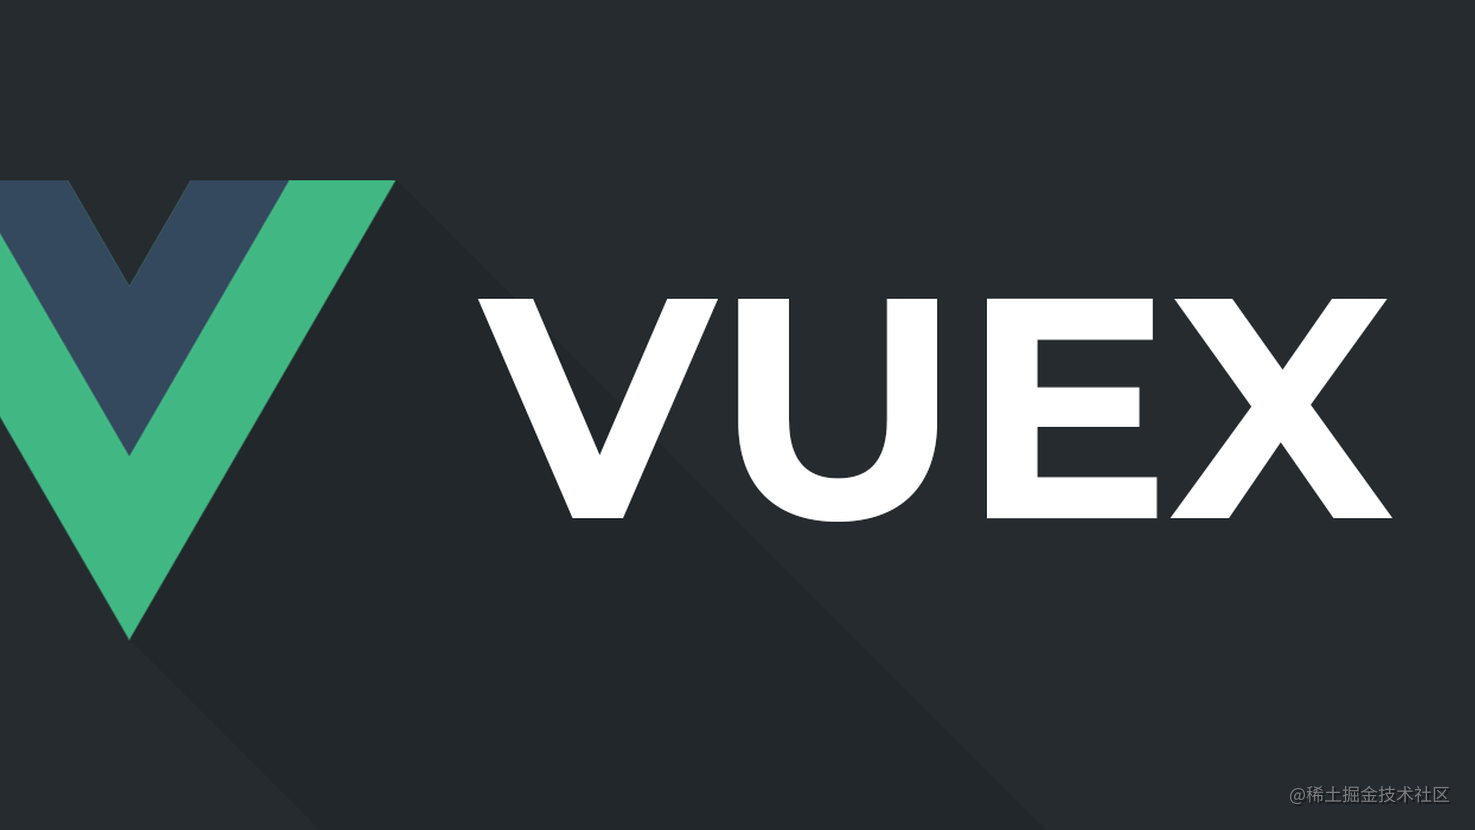 深入解读 Vuex 源码，并实现一个 Vuex